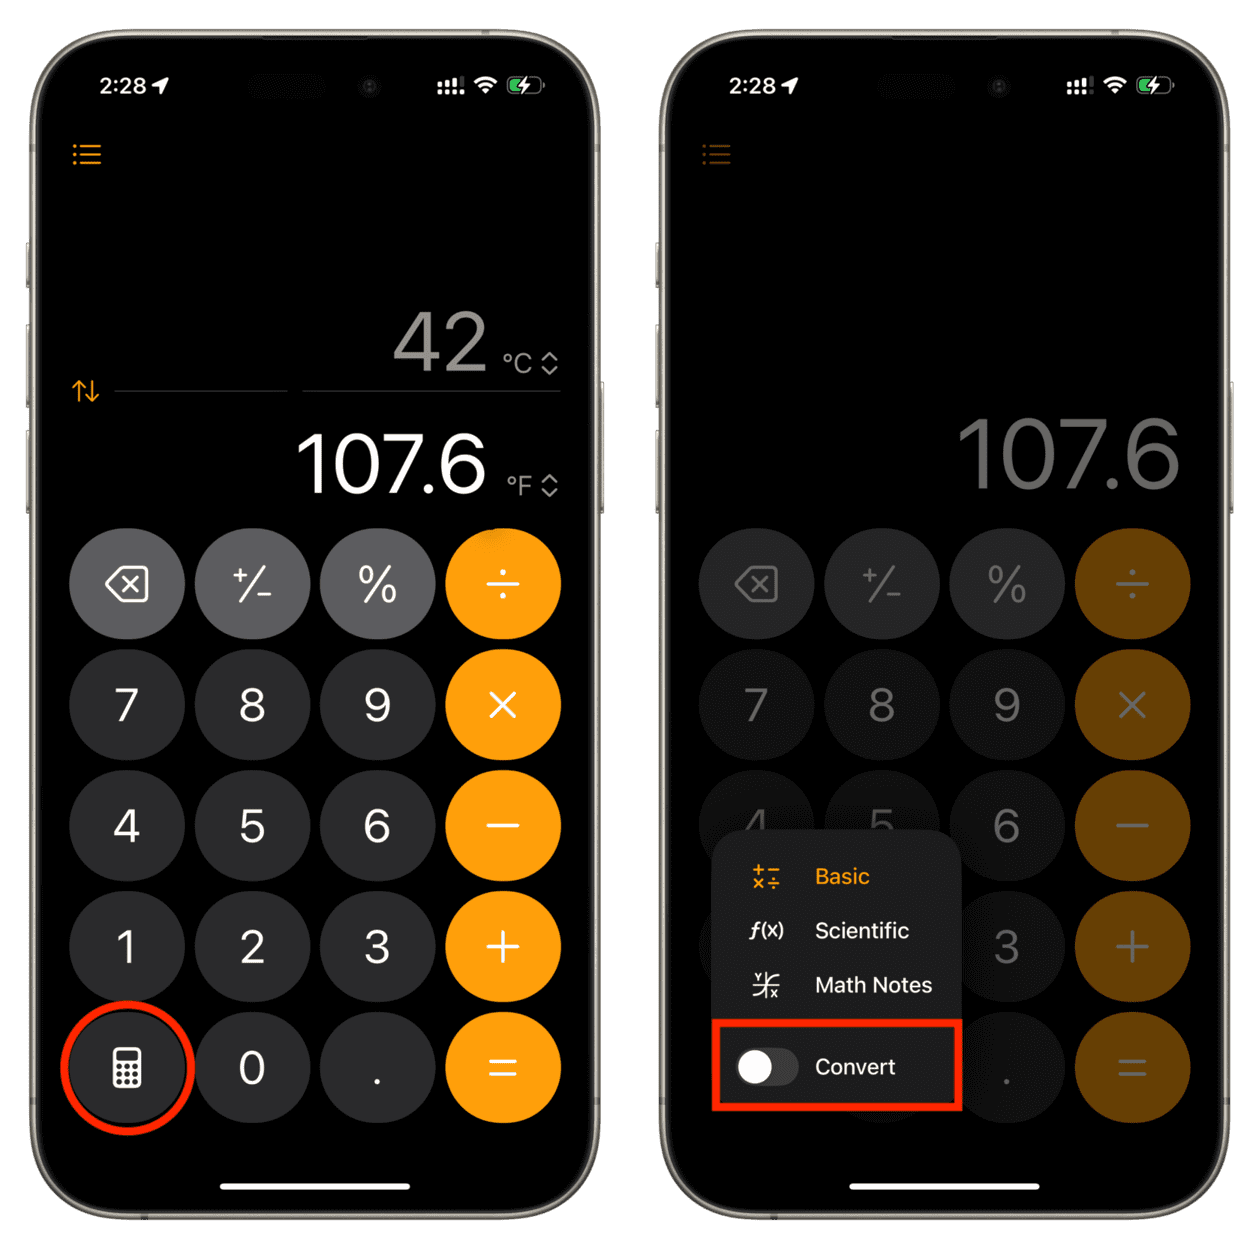 Turn off Convert feature in iPhone Calculator